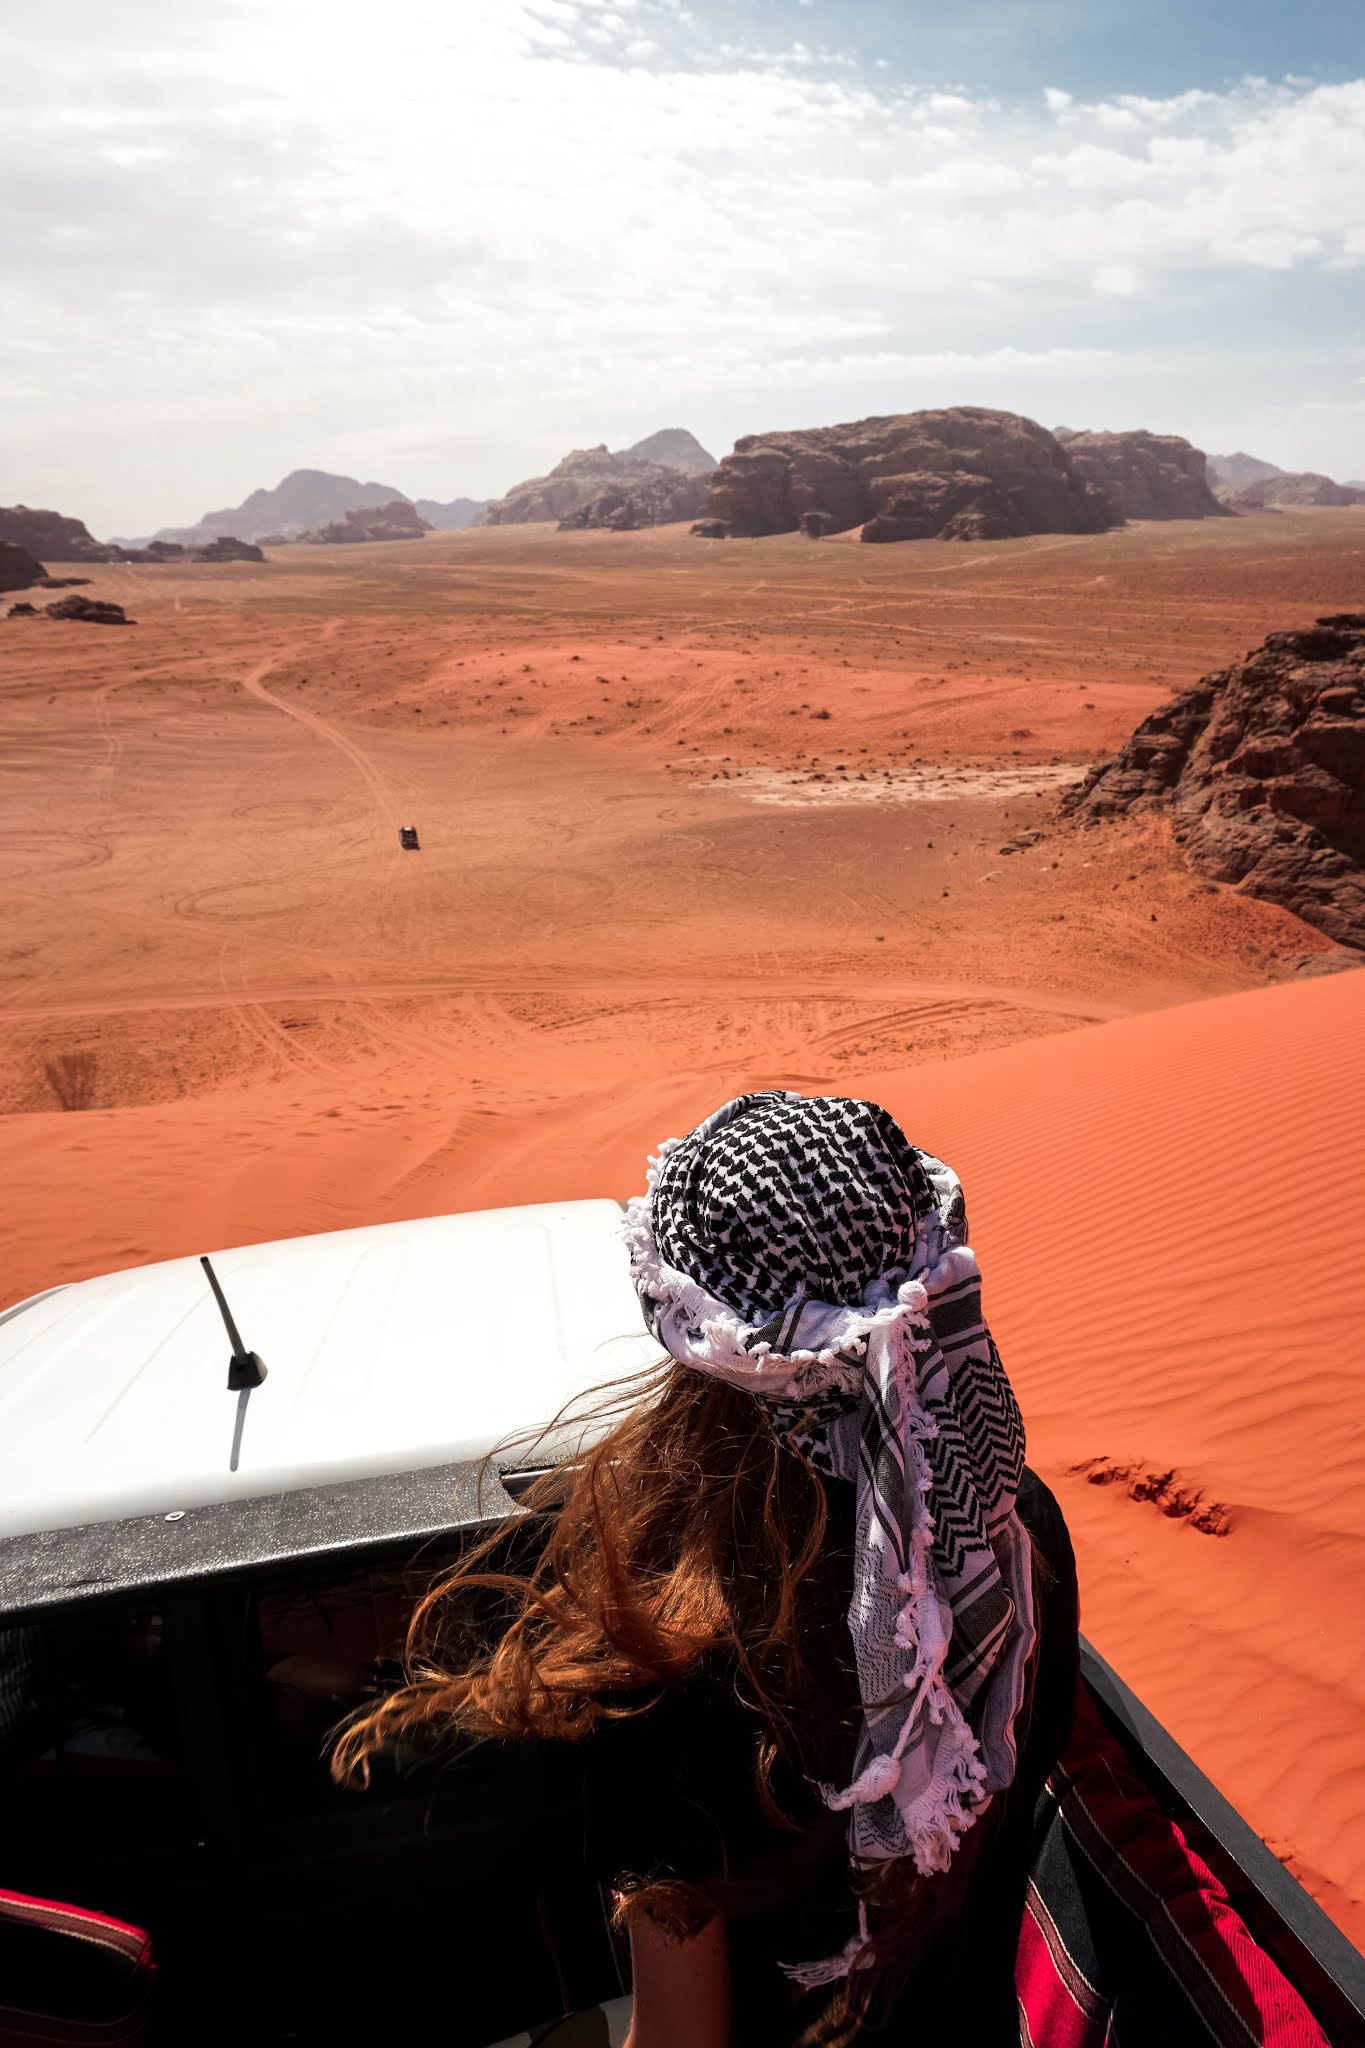 Malvina Dunder blog podróże, rozwój osobisty, relacje, Jordania pustynia Wadi Rum